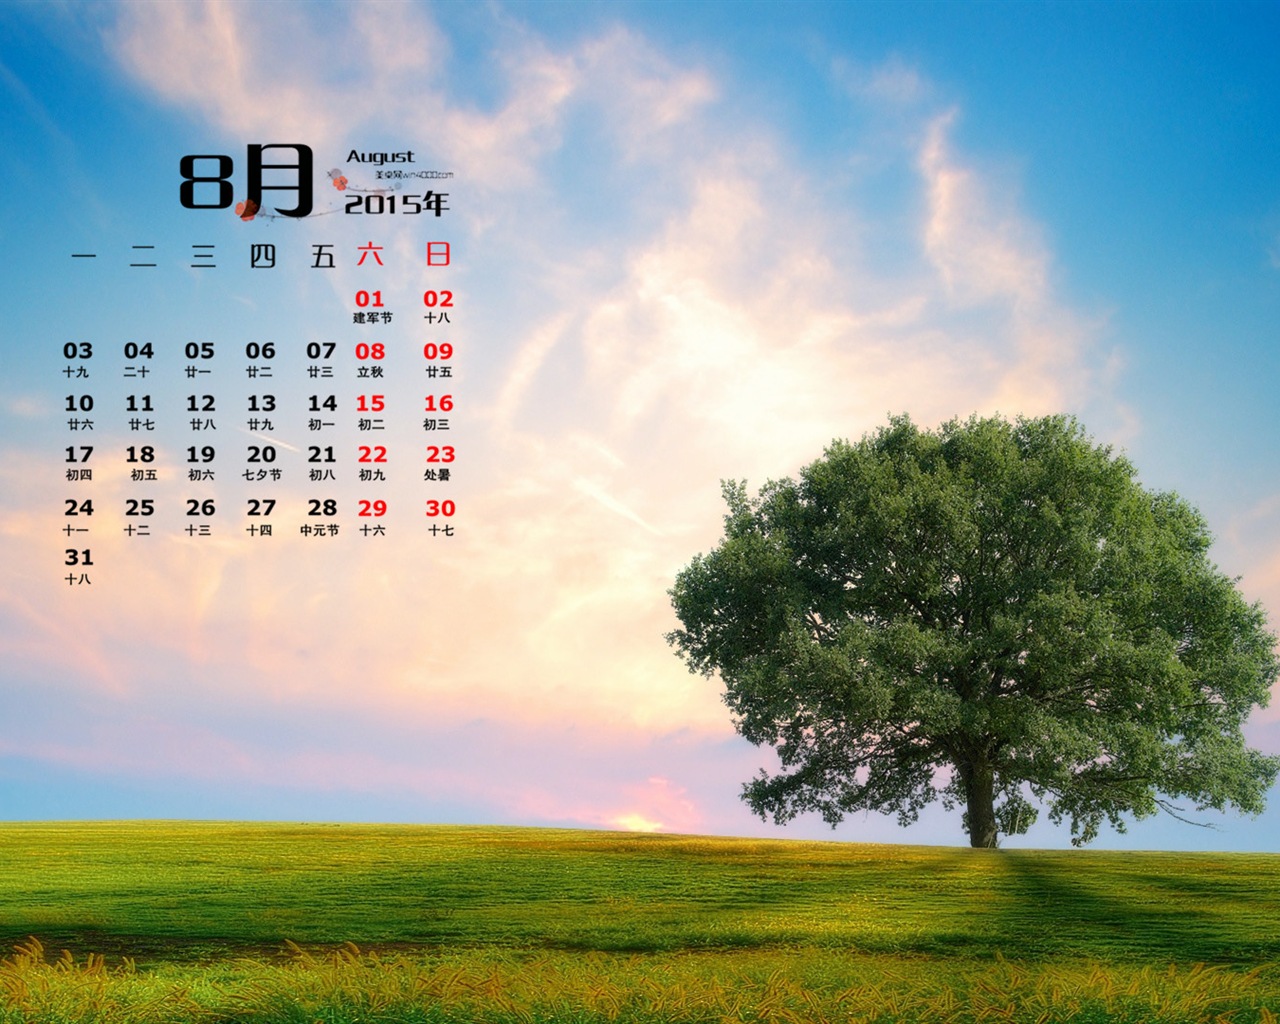 August 2015 Kalender Wallpaper (1) #8 - 1280x1024